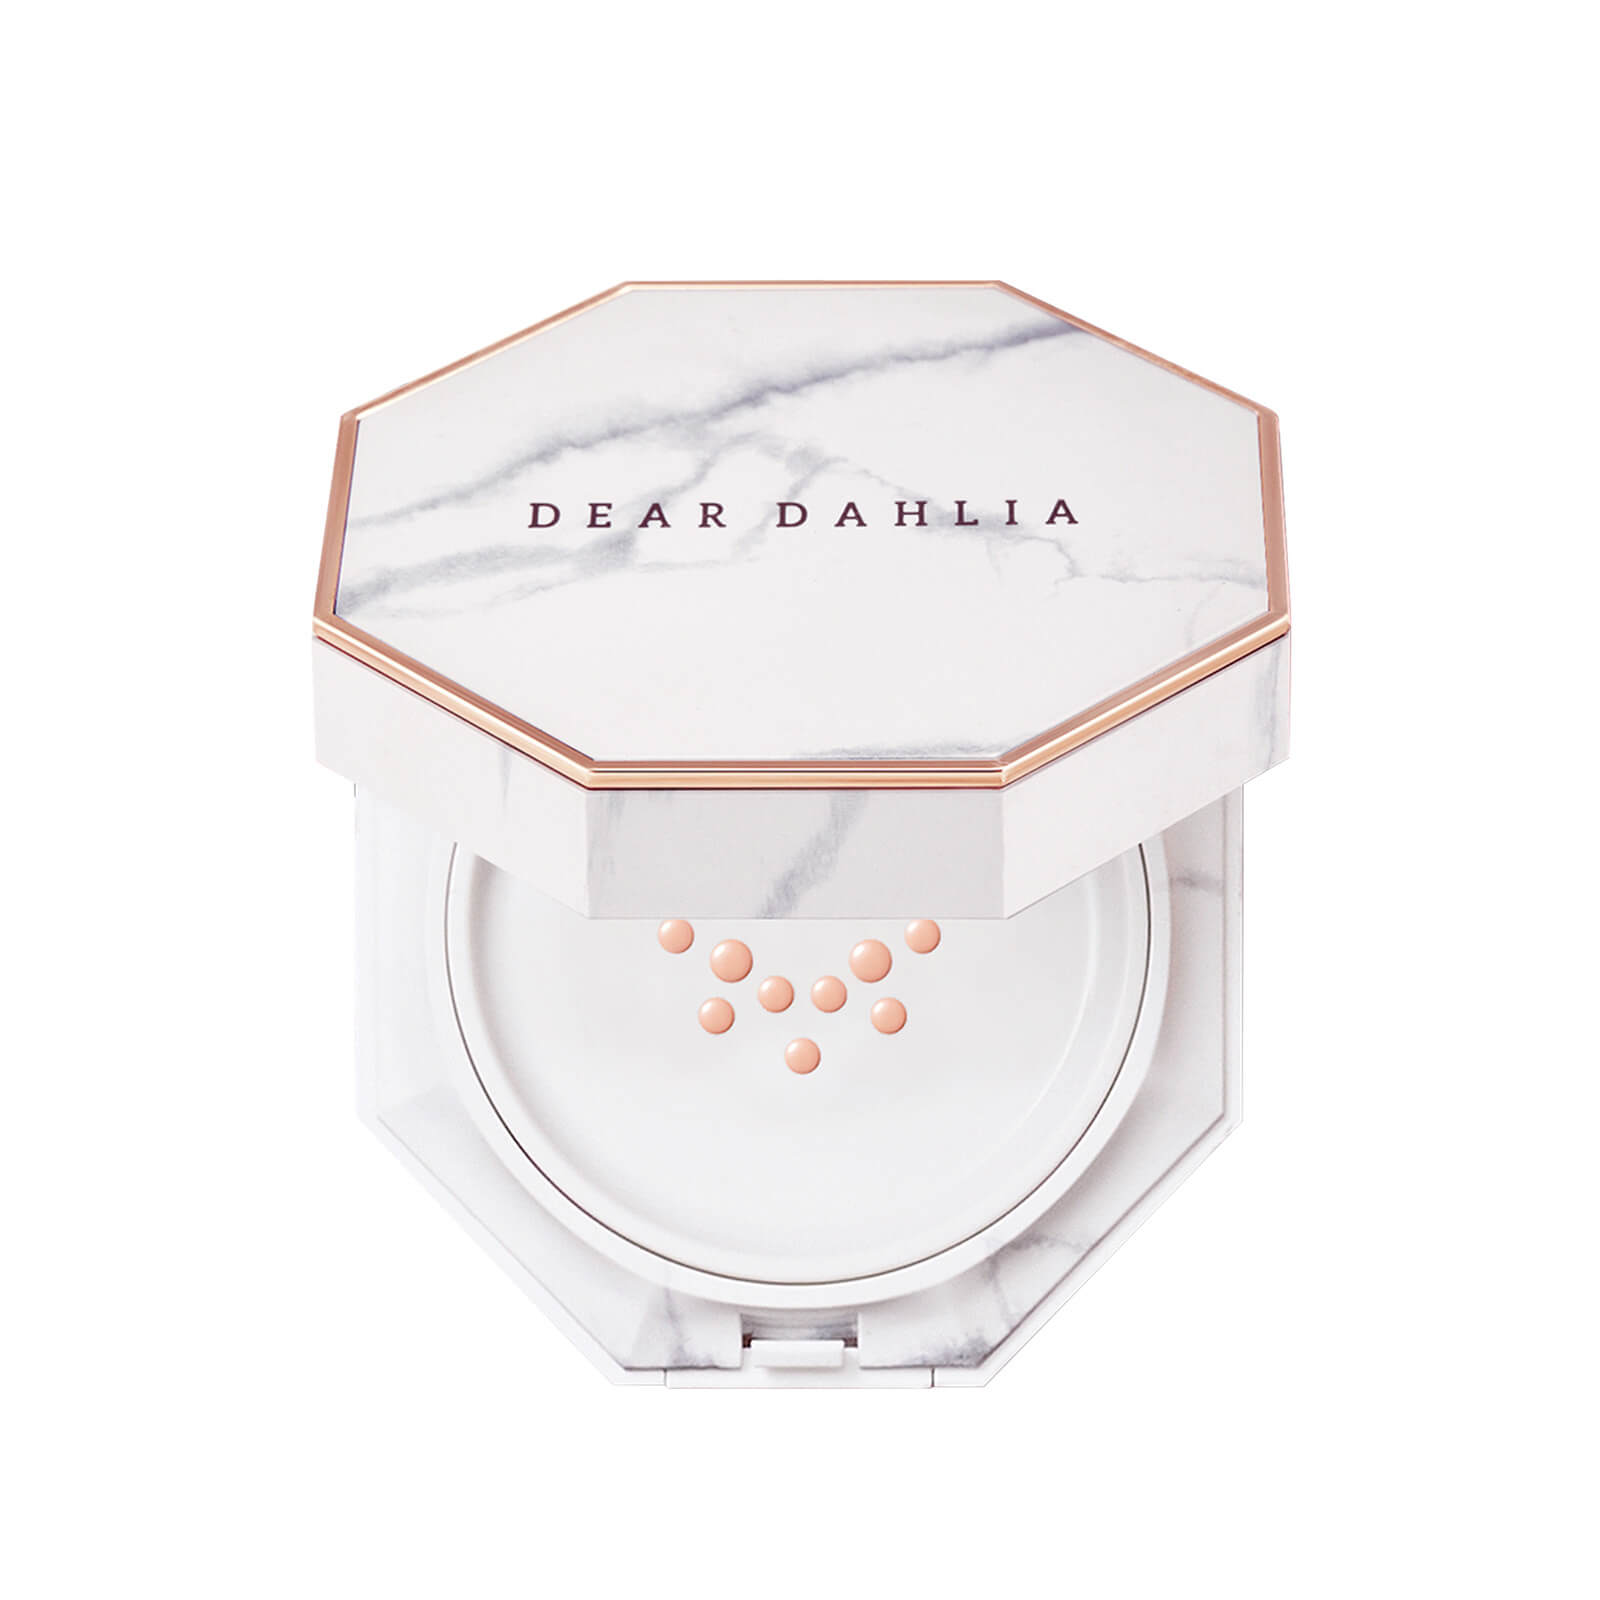 Dear Dahlia Skin Paradise Blooming Cushion 14ml (Various Shades) - Natural Beige